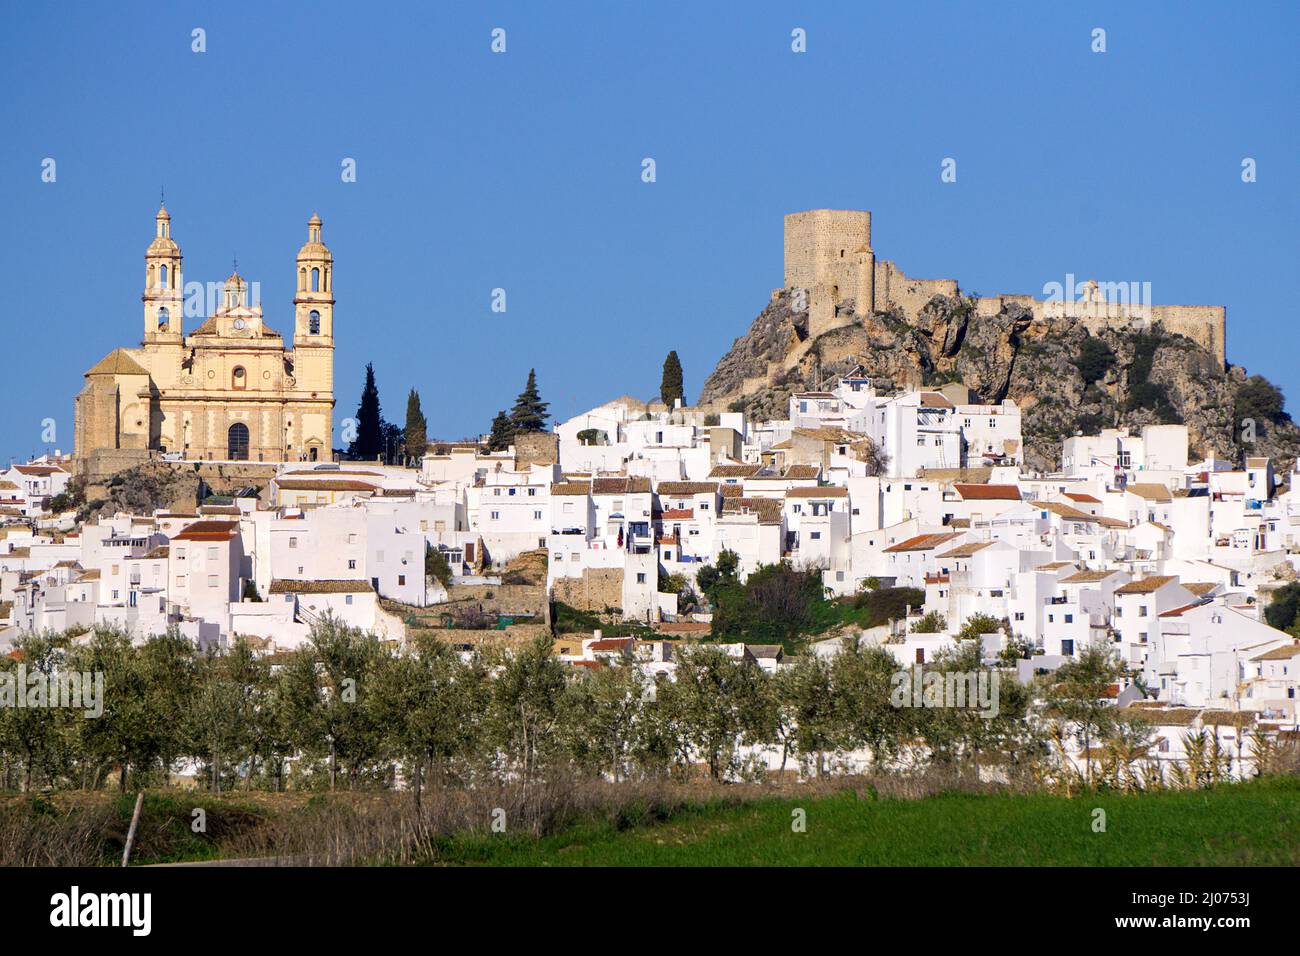 The white village Olvera with castle and church Nuestra Señora de la Encarnacion, Olvera, pueblo blanco, Cadiz province, Andalusia, Spain Stock Photo